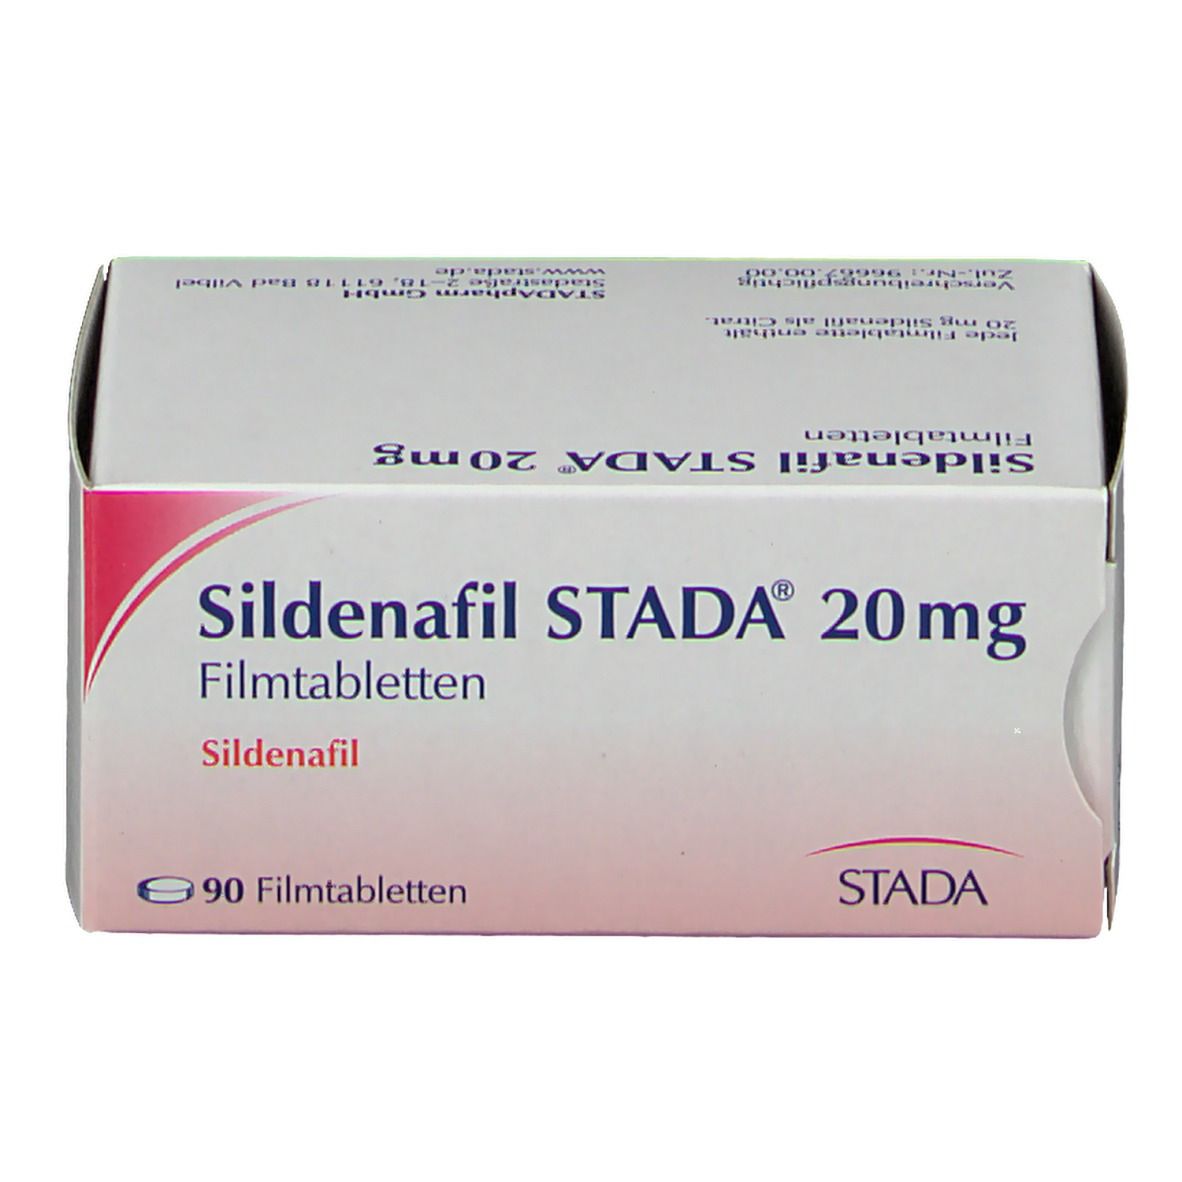 Sildenafil STADA® 20 mg